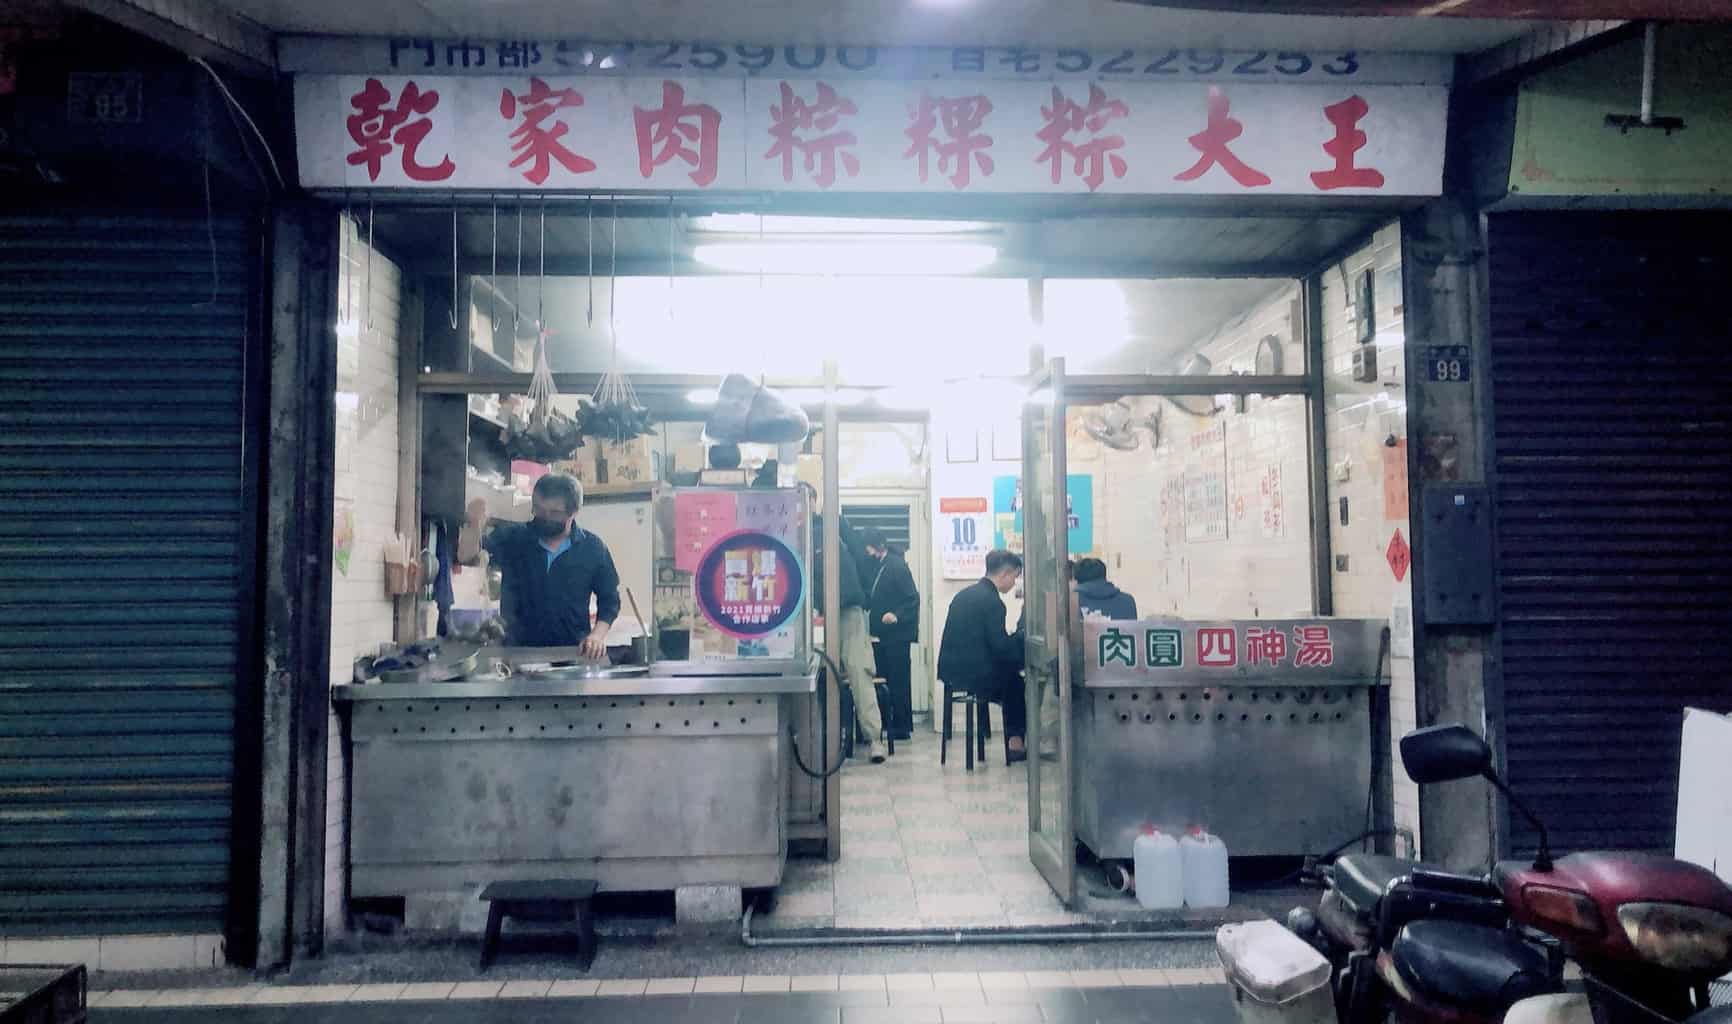  乾家肉粽粿粽大王 店門口